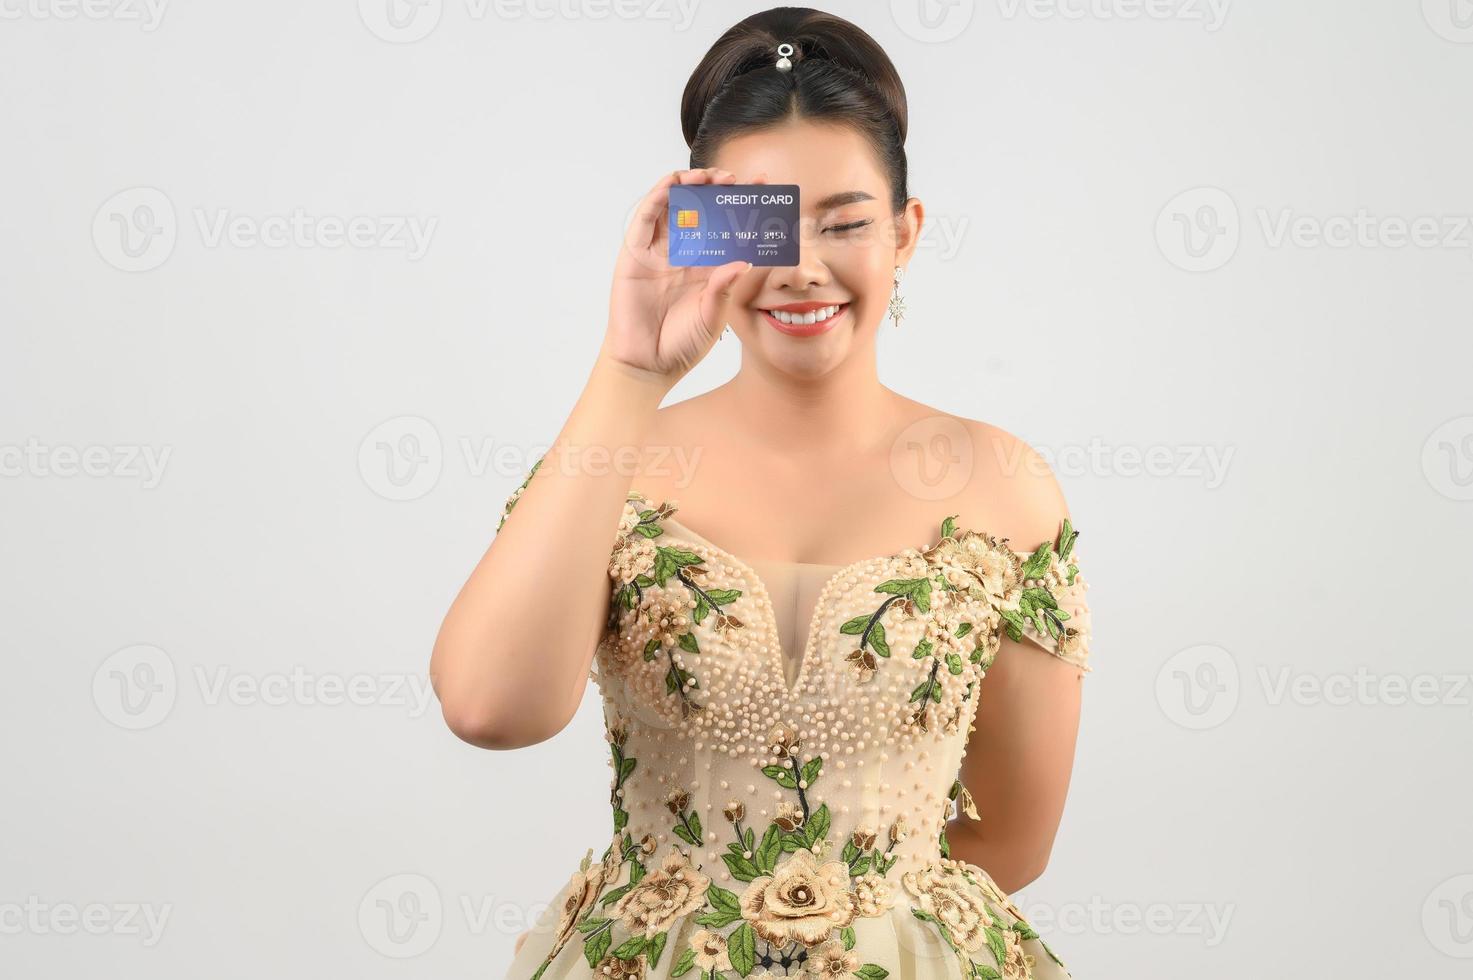 jovem noiva linda asiática postando com cartão de crédito e pincel de beleza na mão foto